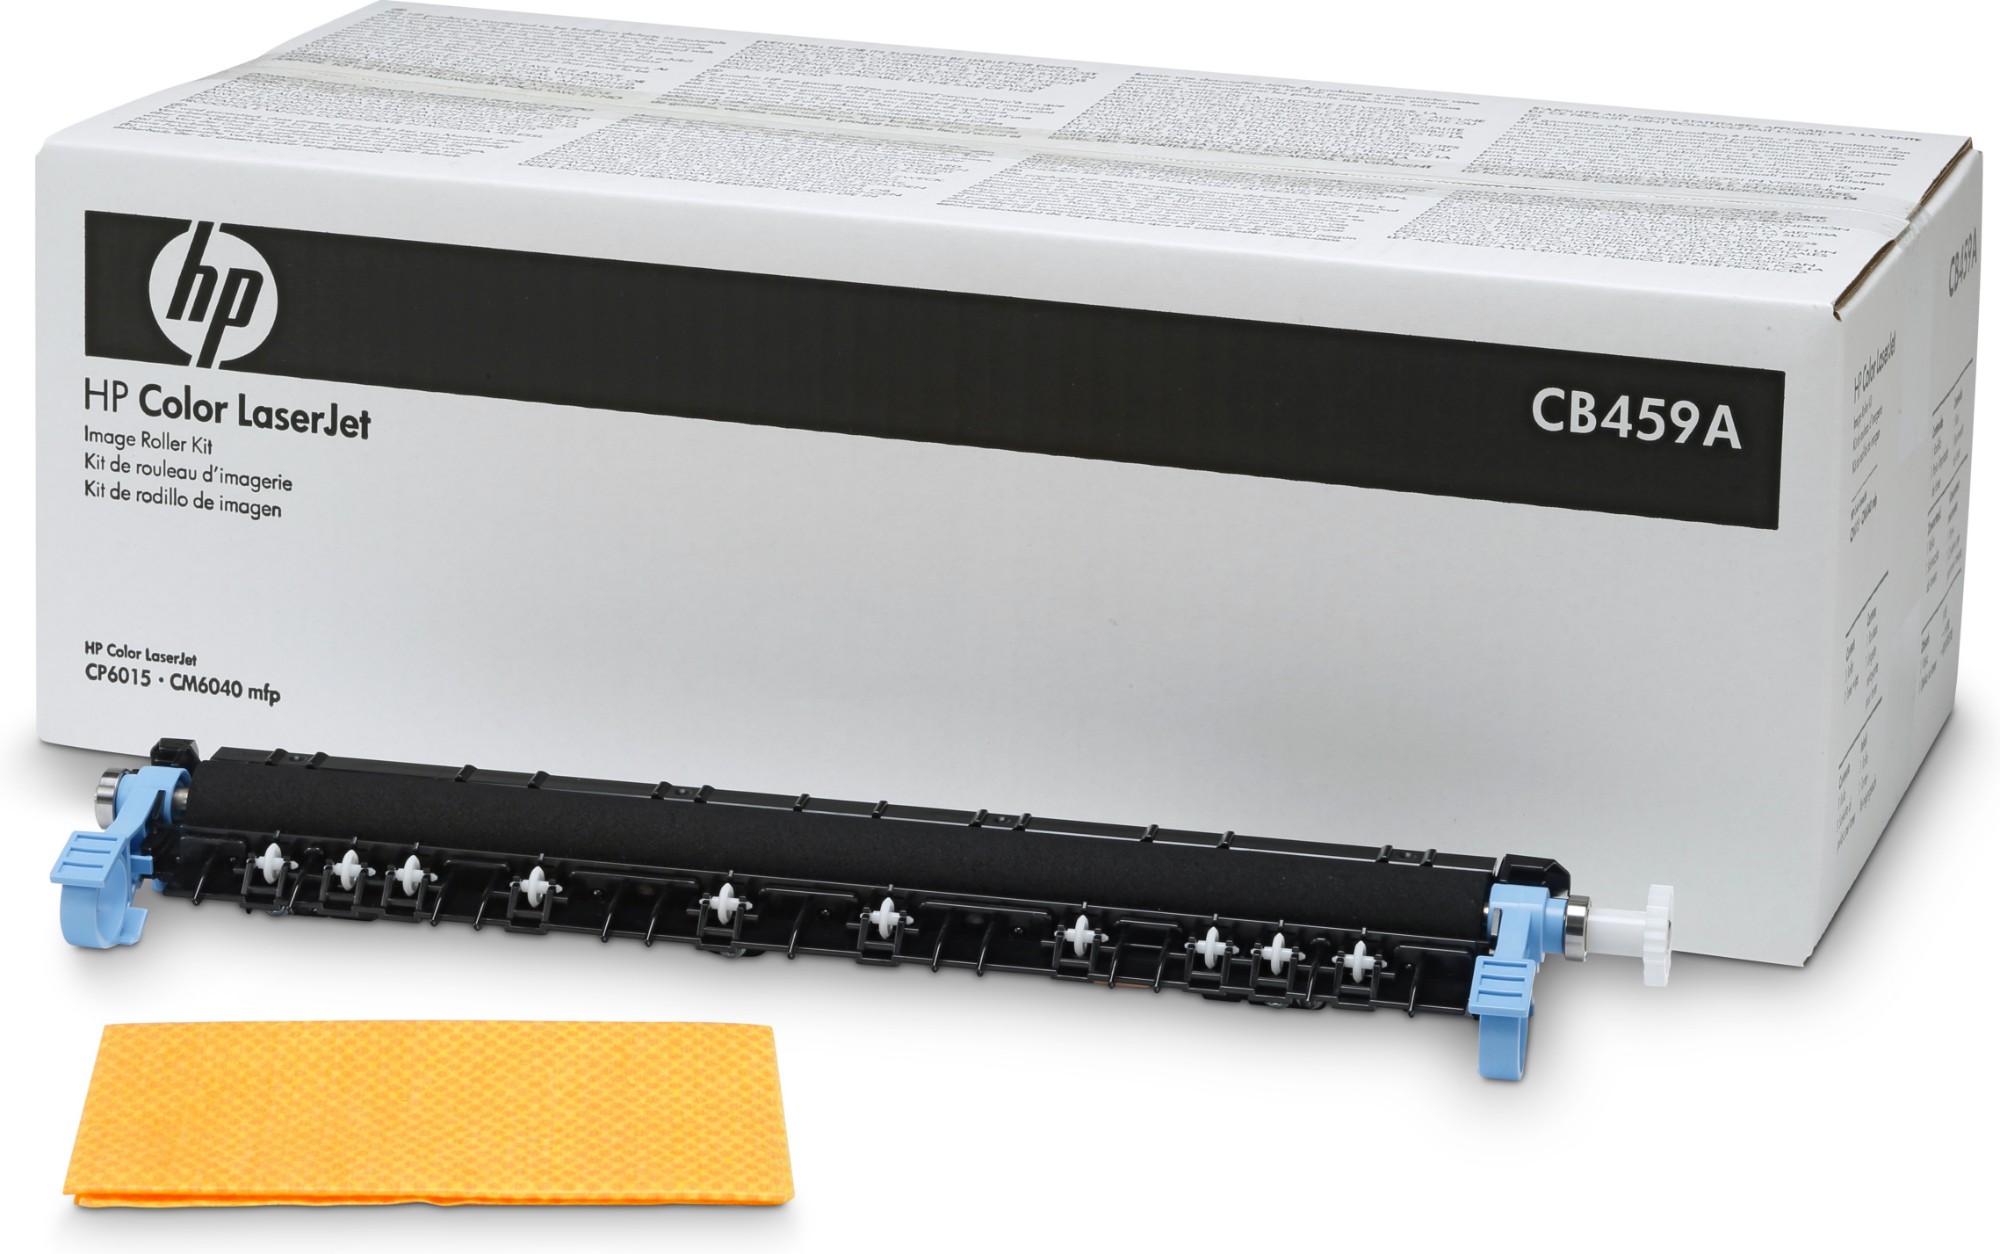 HP Color LaserJet CB459A Roller Kit 150000 sidor